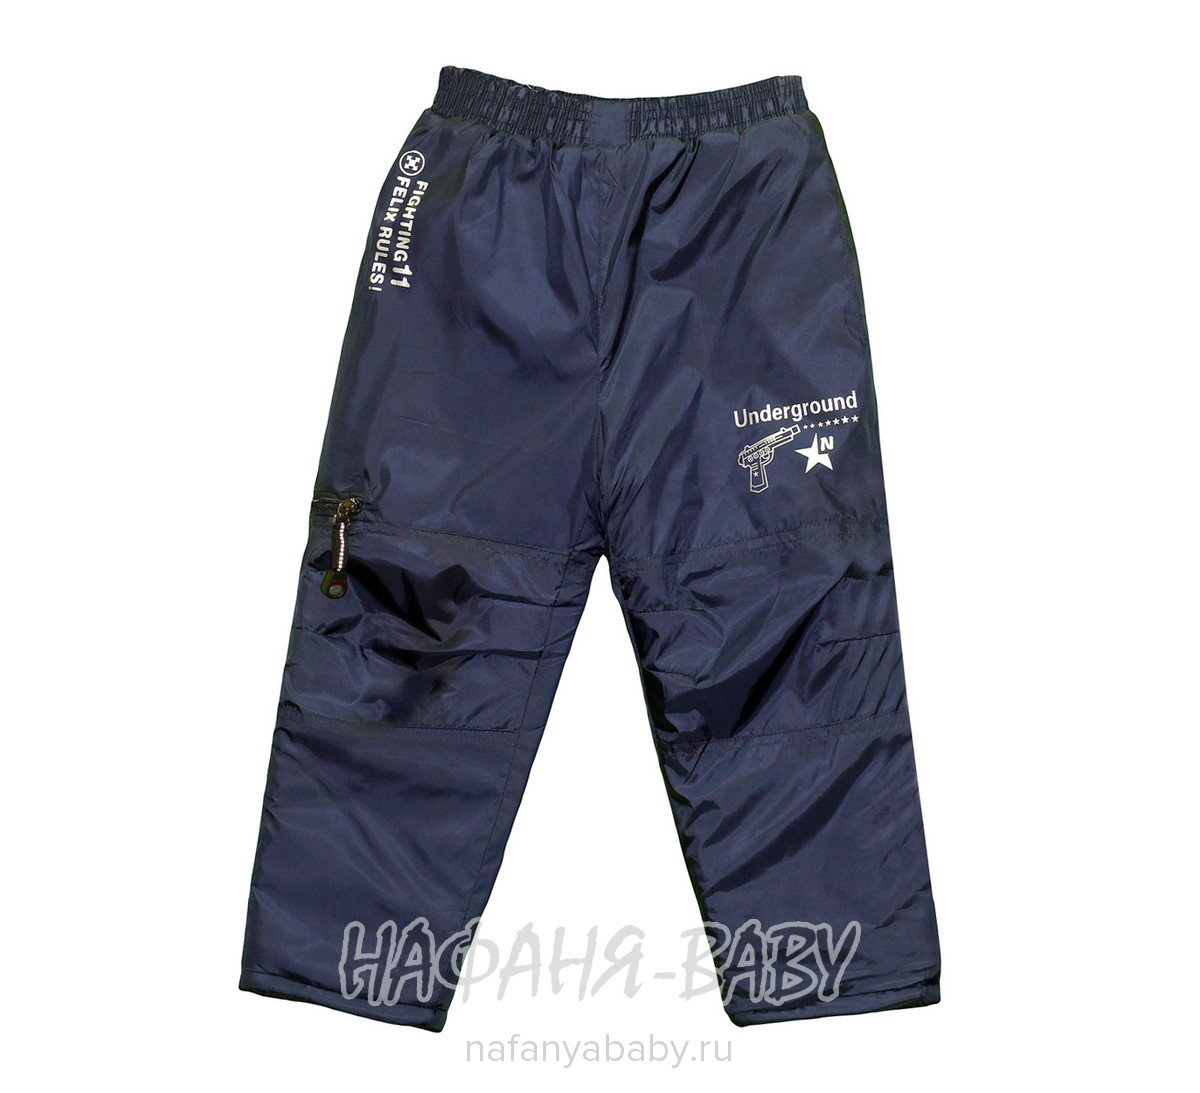 Детские зимние брюки ZHB арт: 986 16-19, 1-4 года, оптом Китай (Пекин)